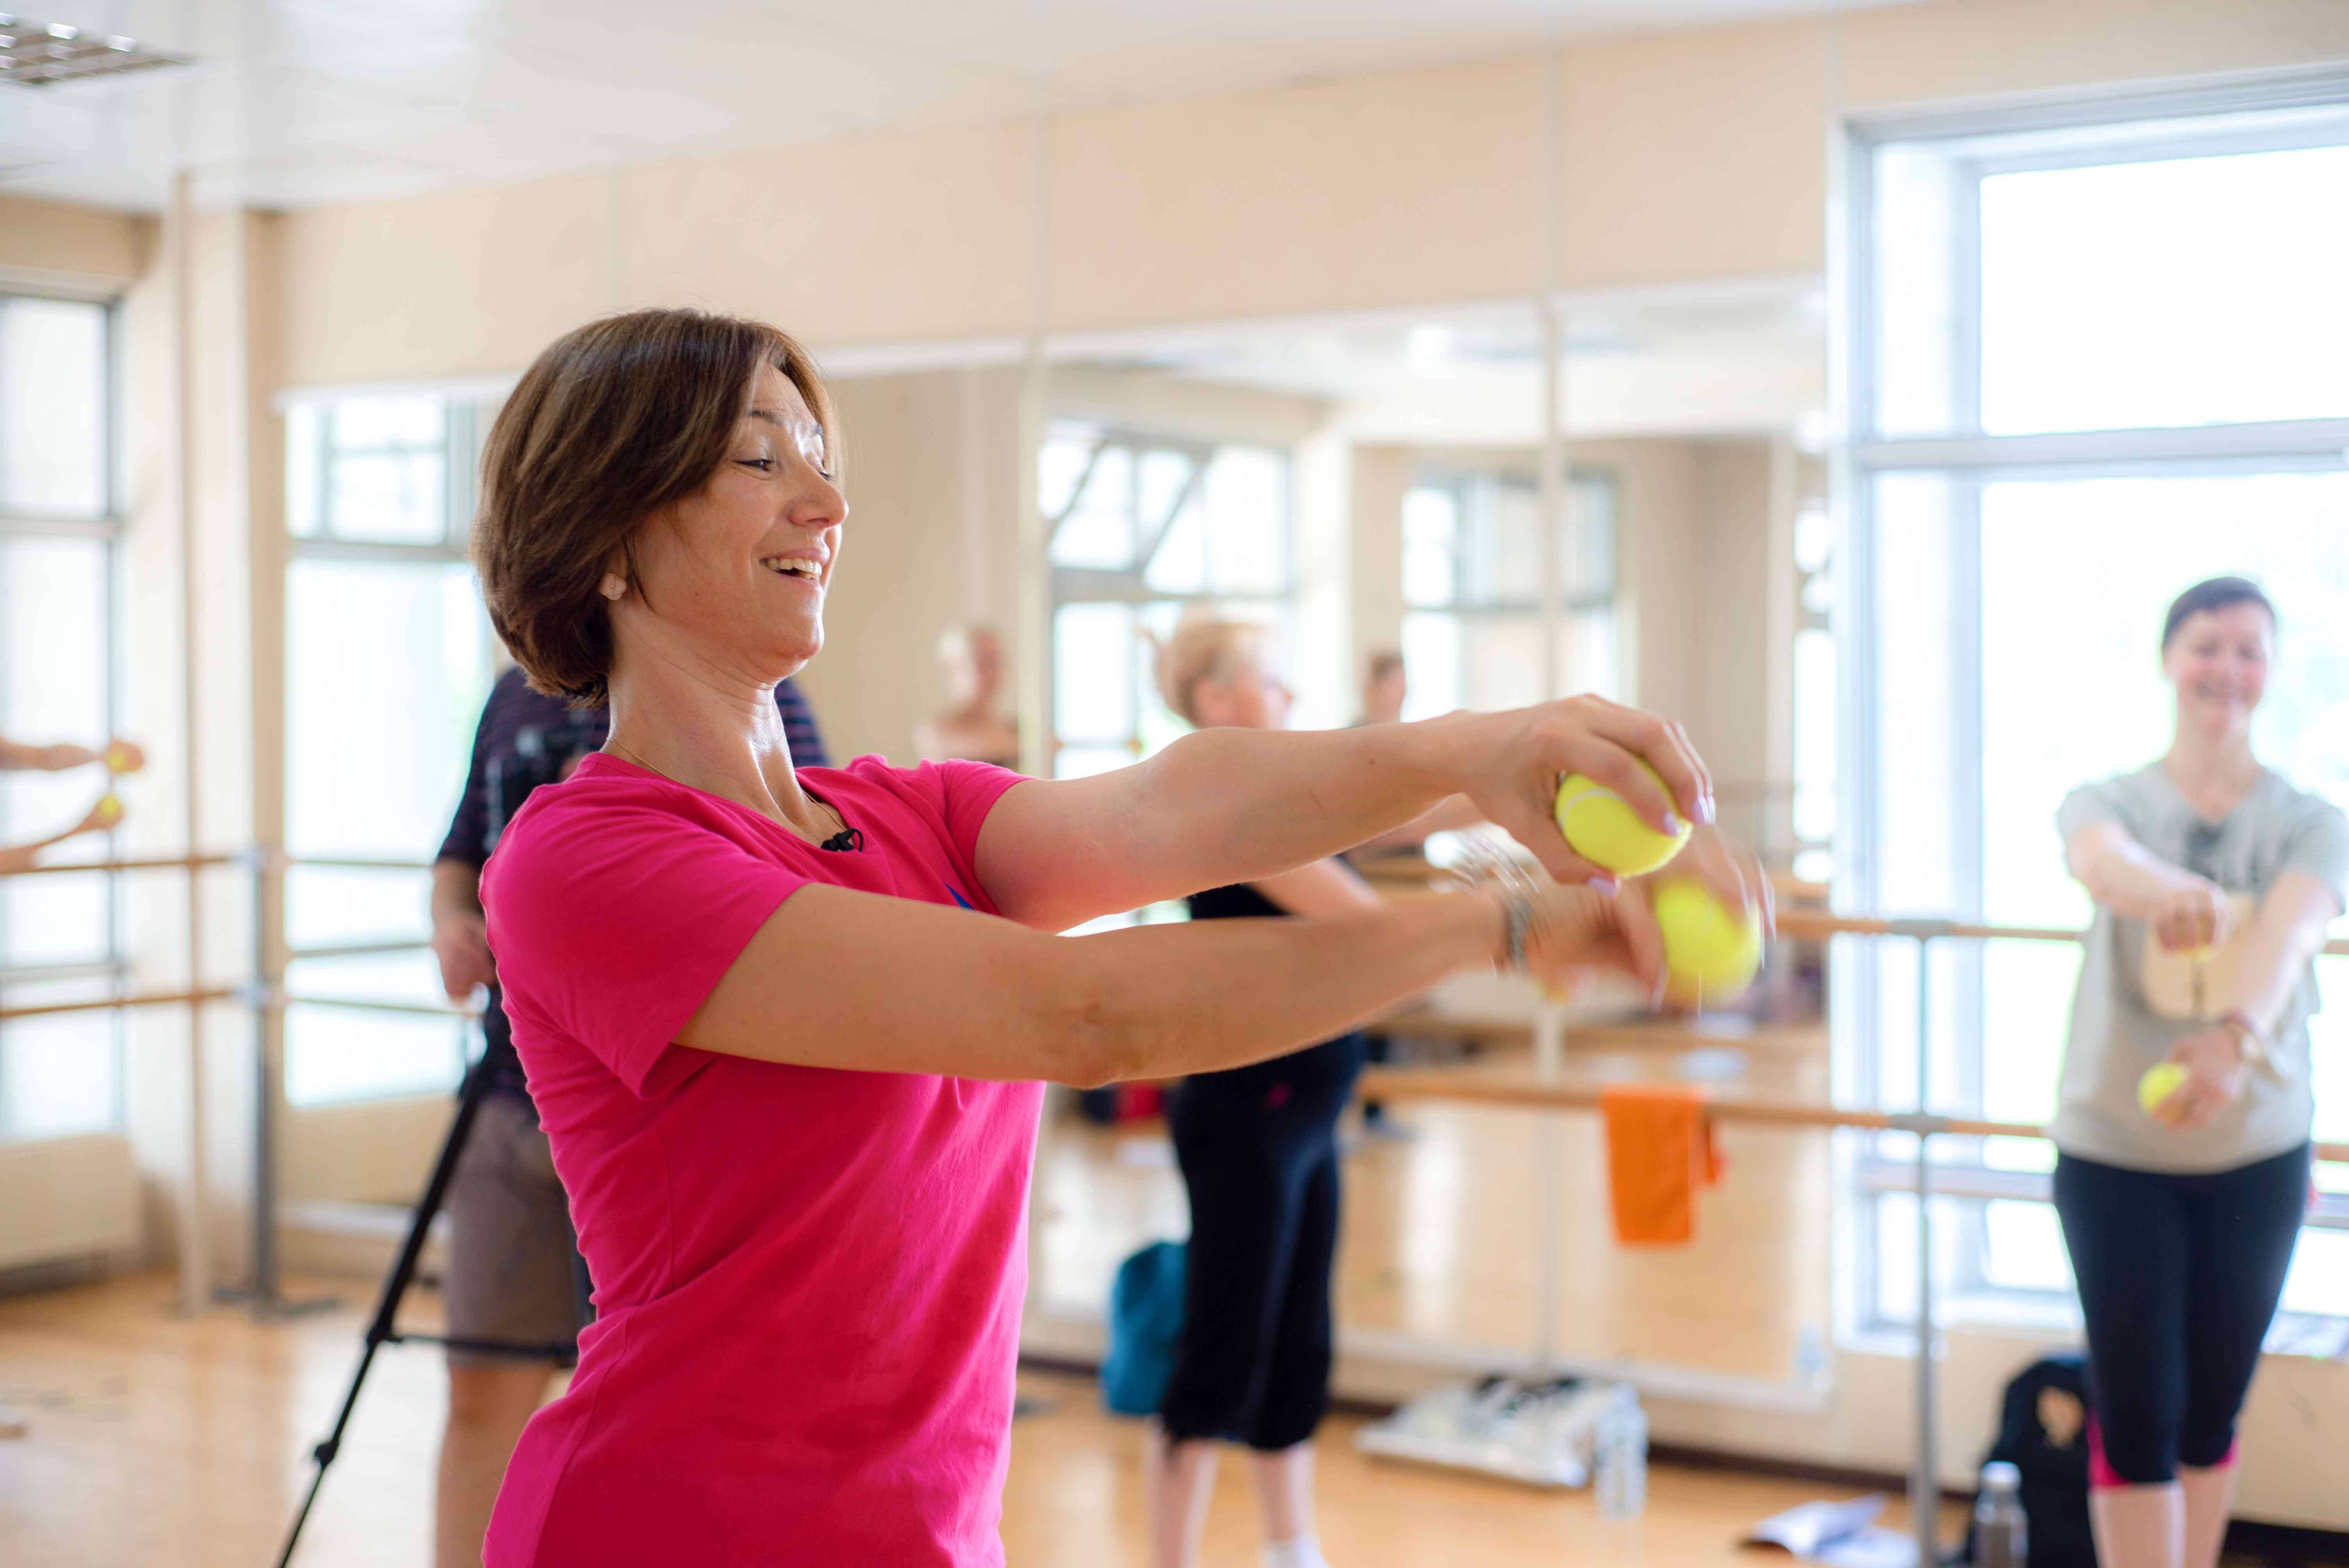 Нейрогимнастика — развитие внимания и координации (упражнения с теннисными мячами)